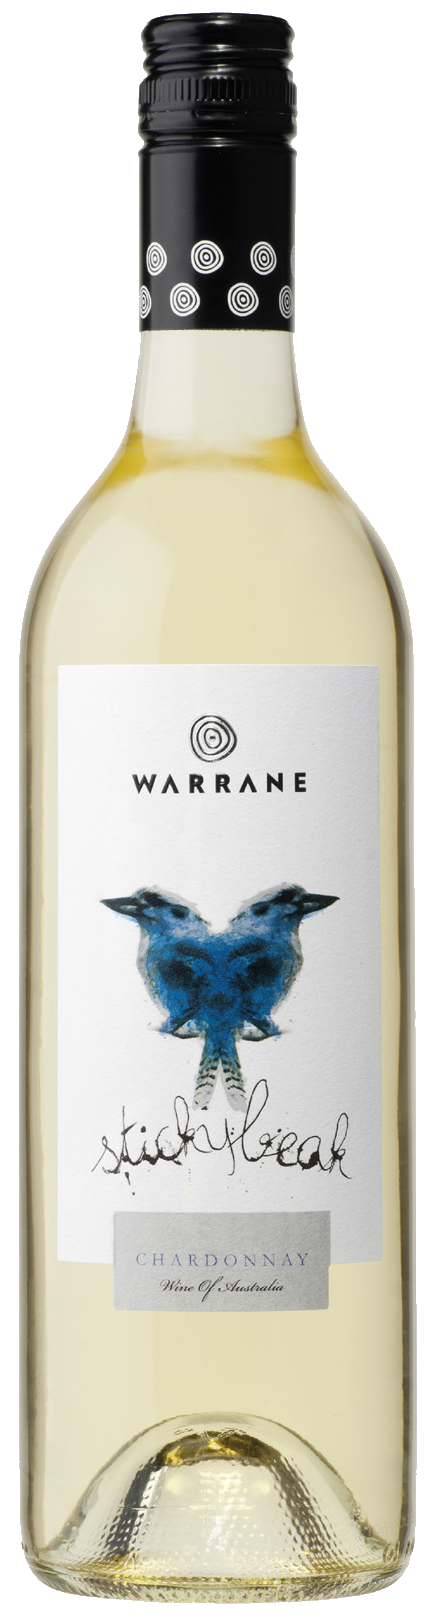 Warrane, Sticky Beak Chardonnay 2019